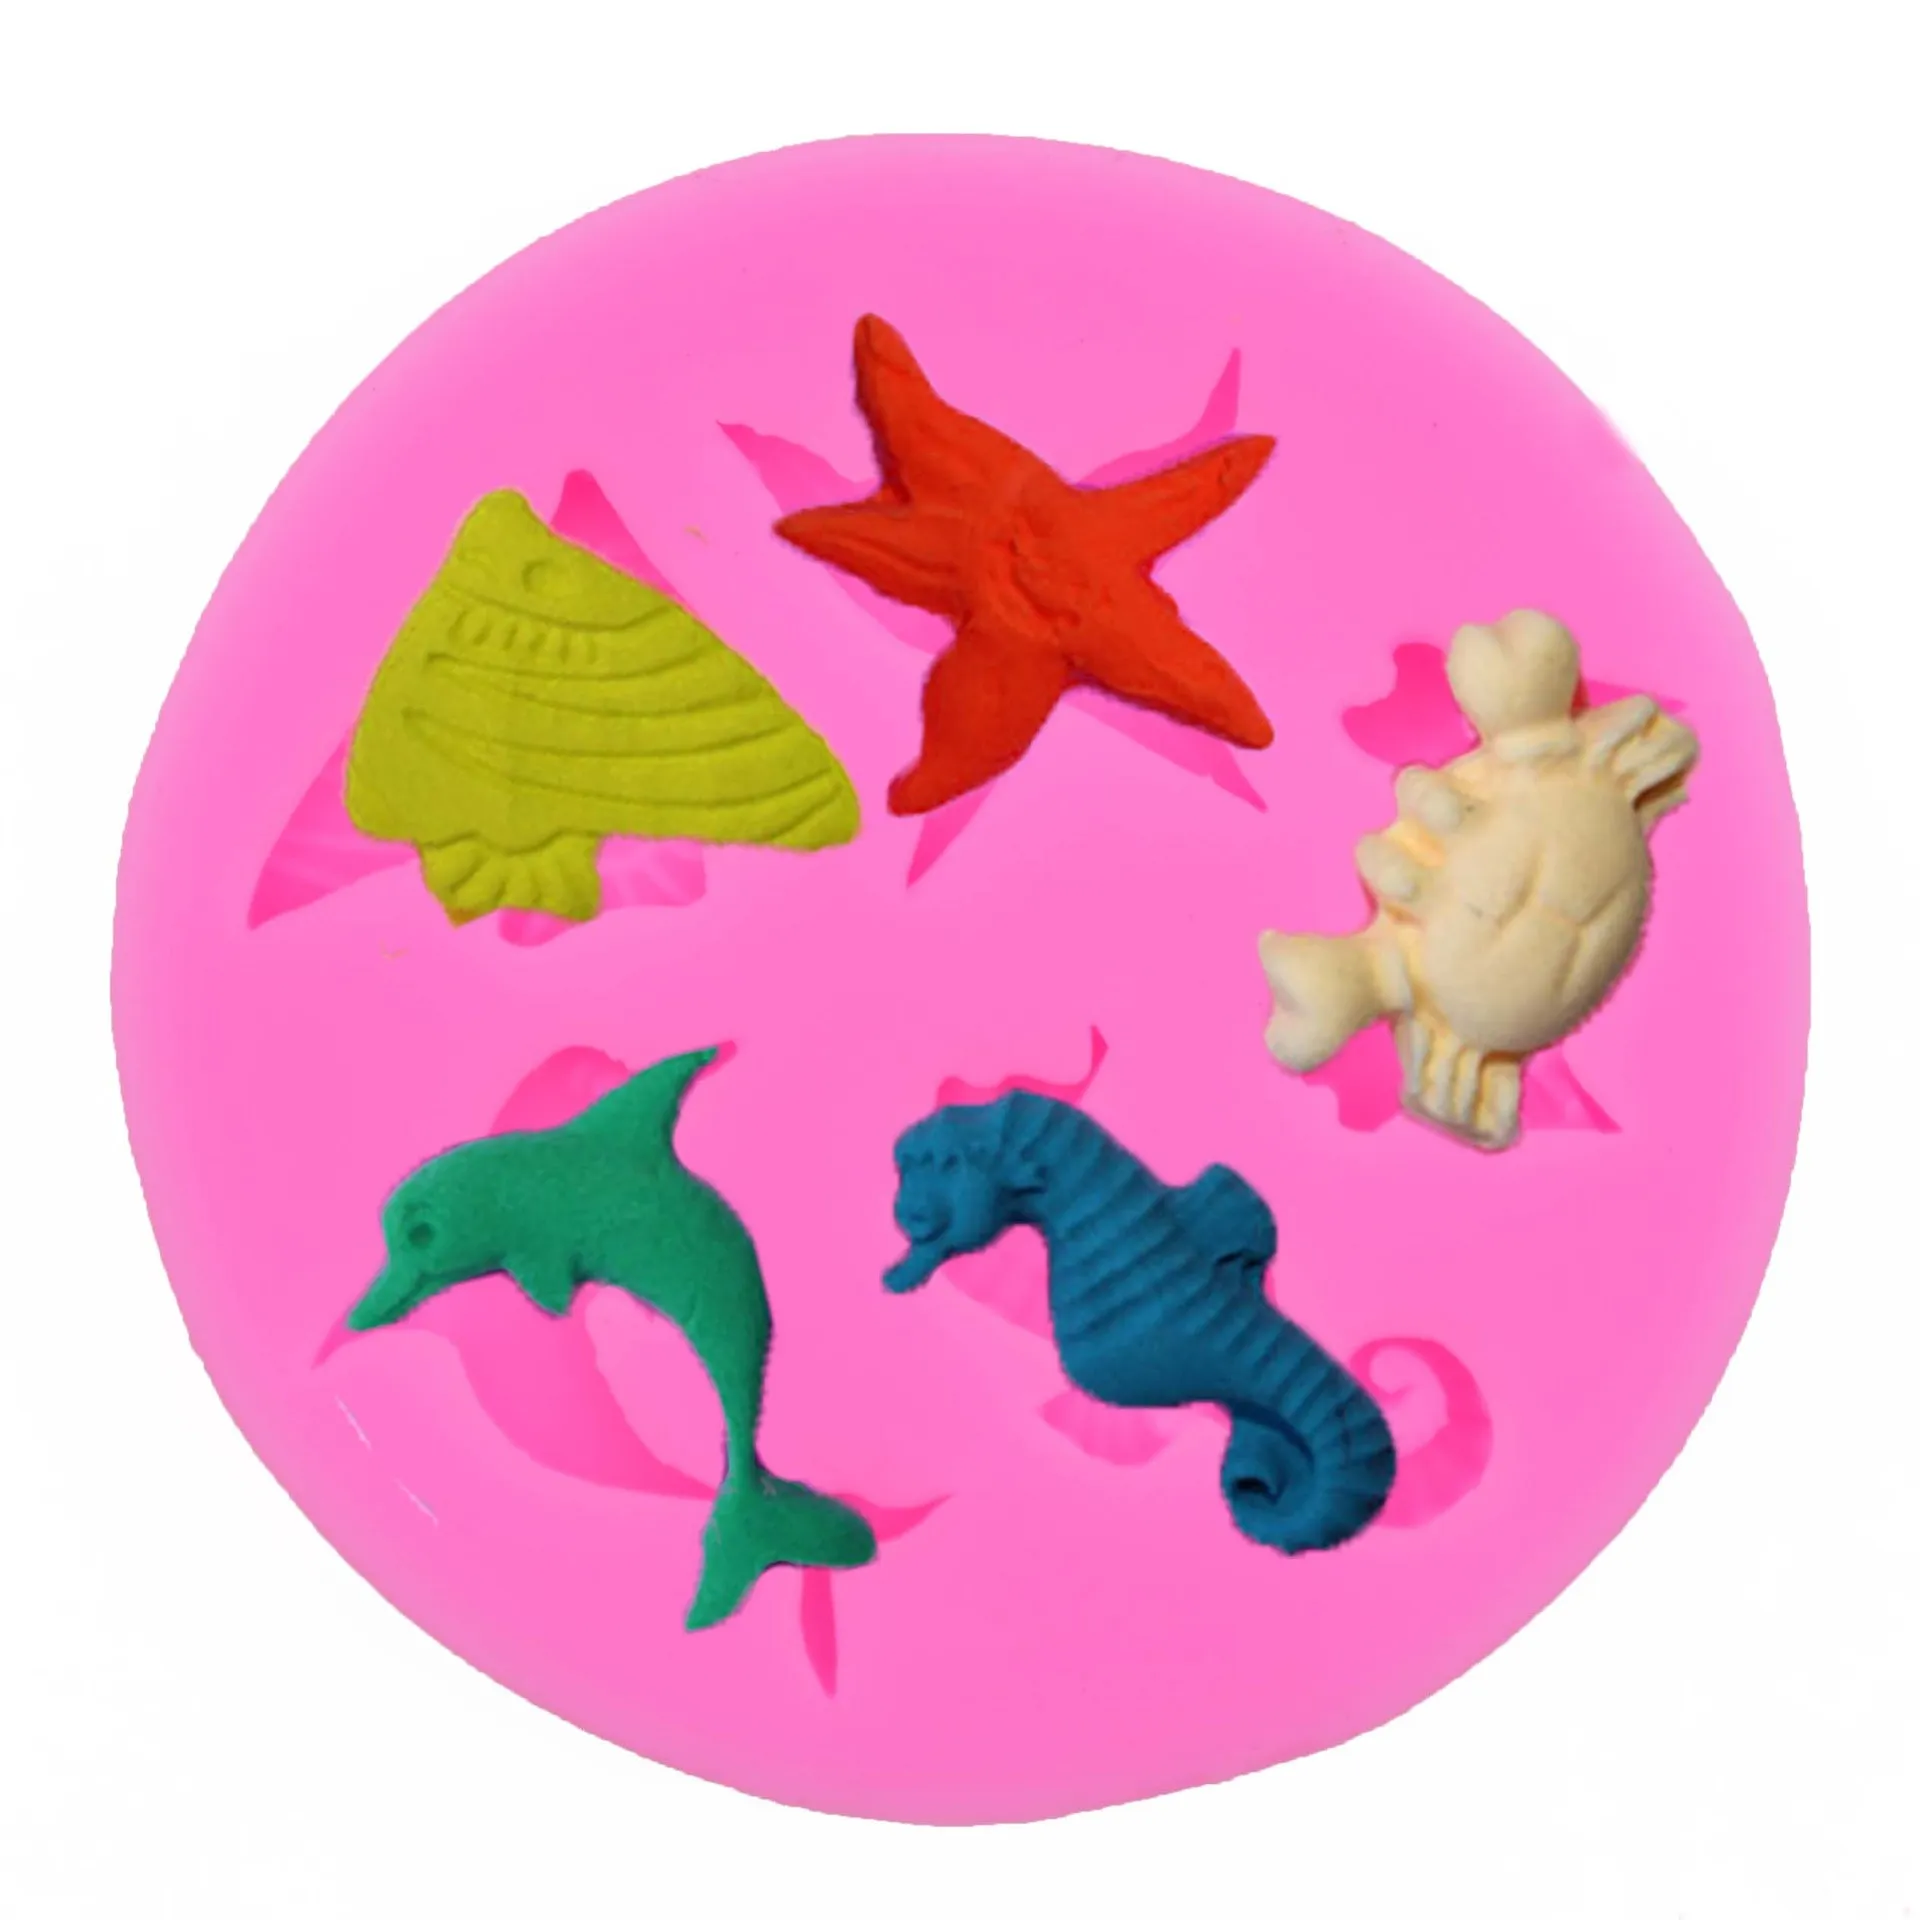 실리콘 곰팡이 3D 해마 불가사리 돌고래 케이크 장식 실리콘 퐁당 곰팡이 해양 동물 케이크 베이킹 곰팡이 케이크 장식 선물 DH9466